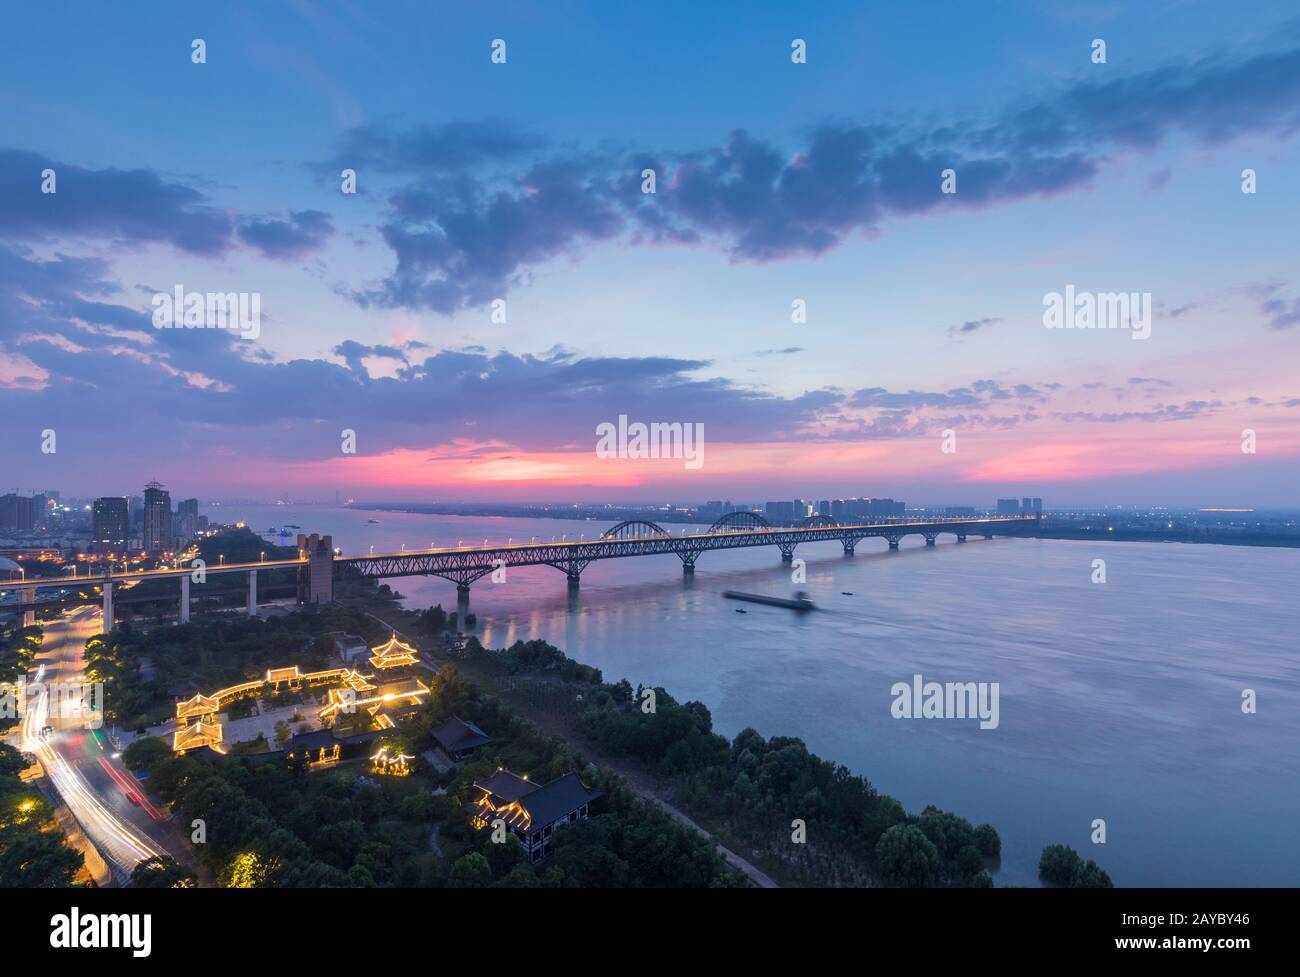 jiujiang yangtze river bridge in night falls Stock Photo